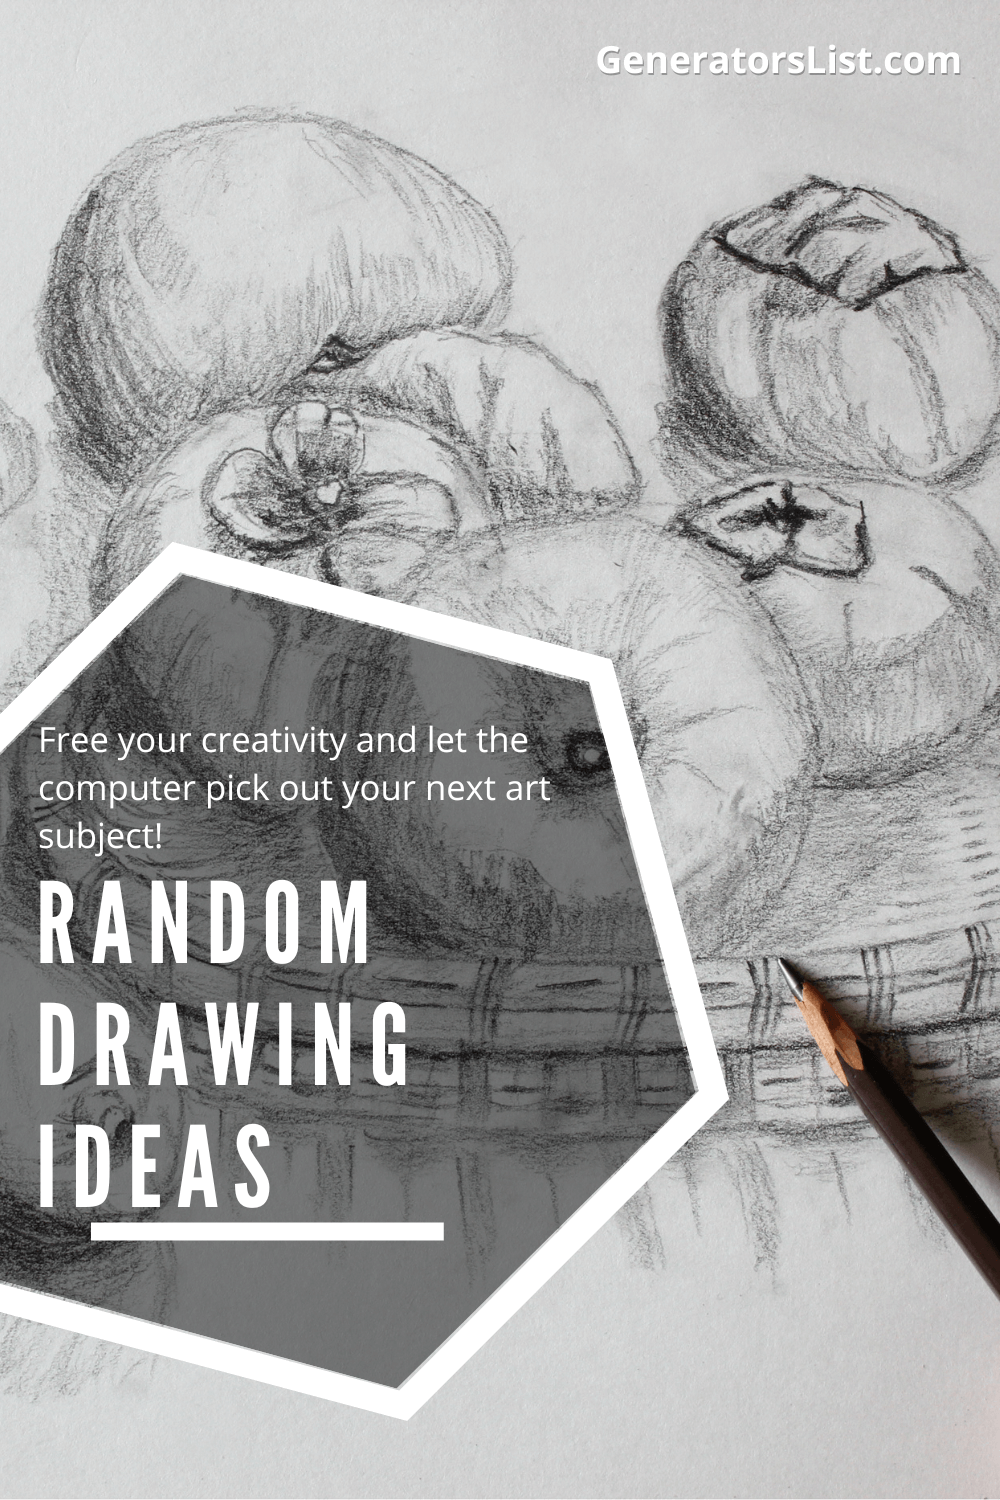 Random Drawing Ideas - Generators List